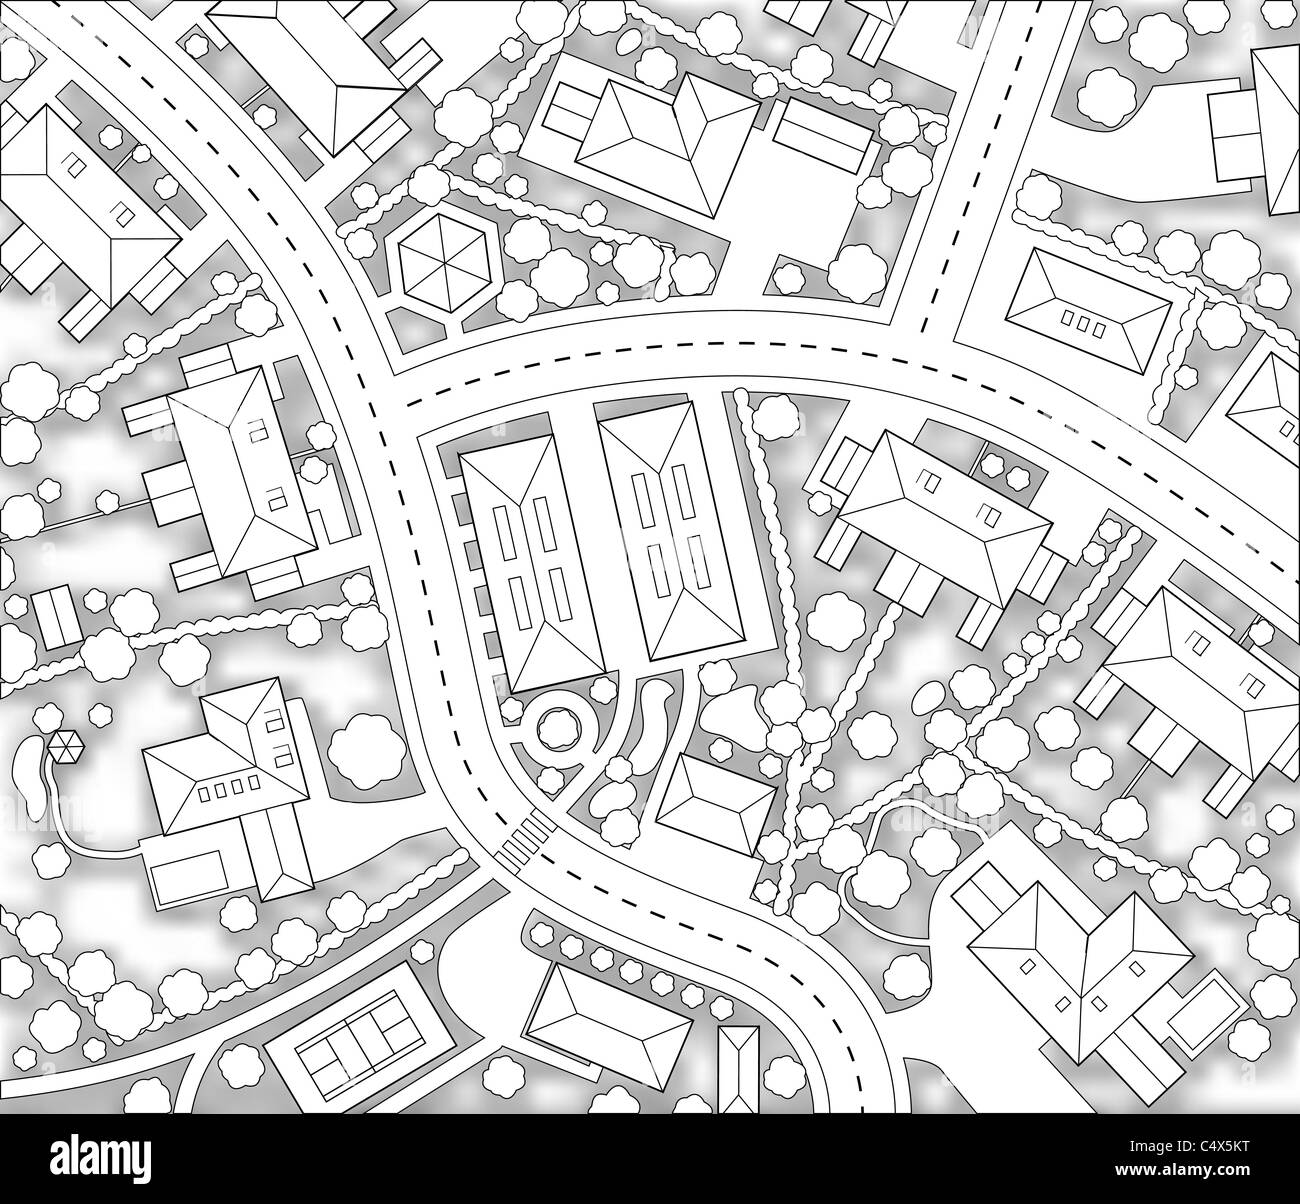 Découpe illustrée carte d'une zone résidentielle avec des génériques de l'ombre d'arrière-plan Banque D'Images